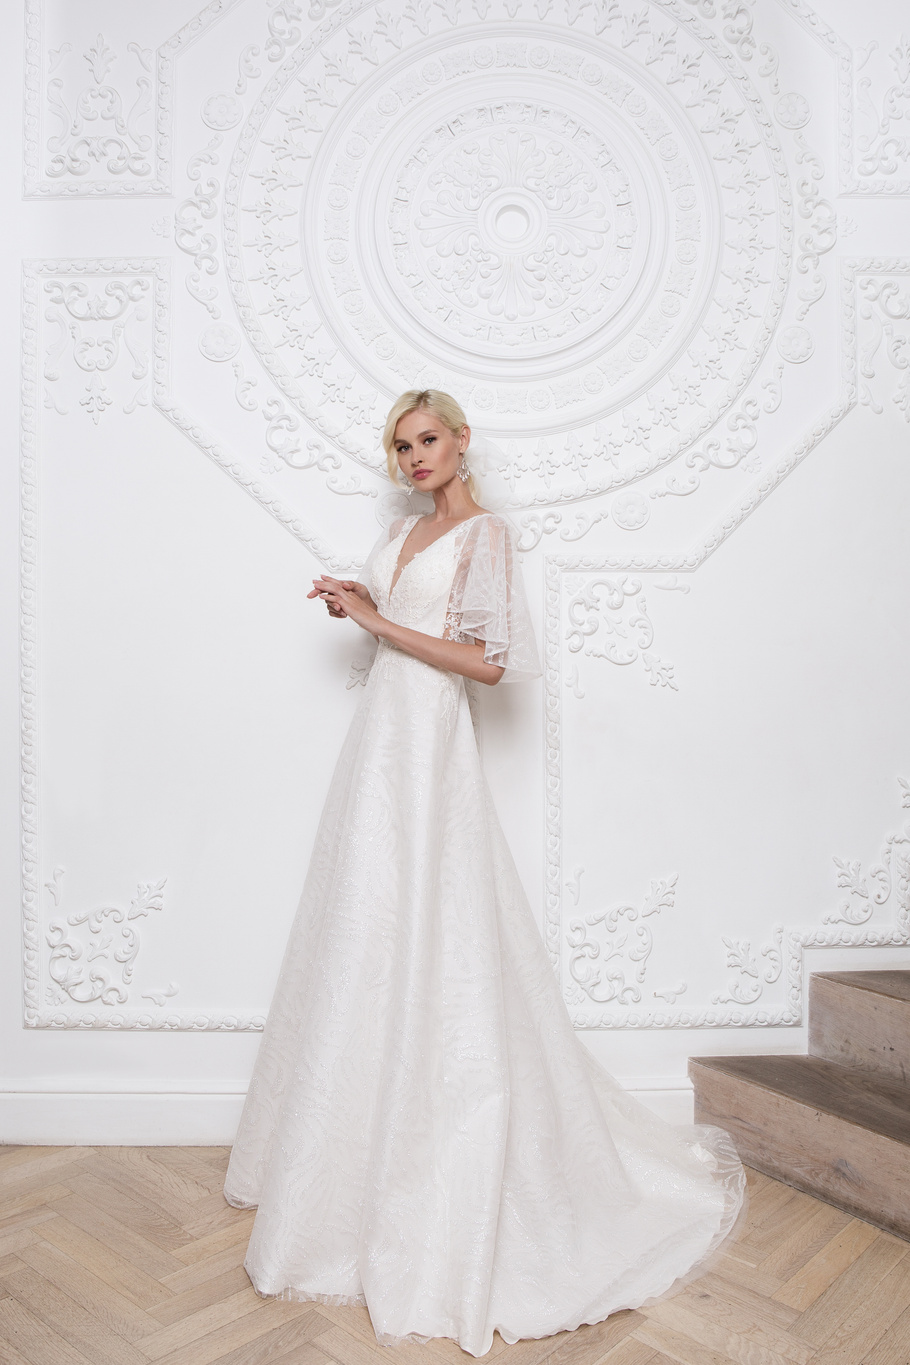 Купить свадебное платье «Клэр» Мэрри Марк из коллекции 2020 года в Самаре